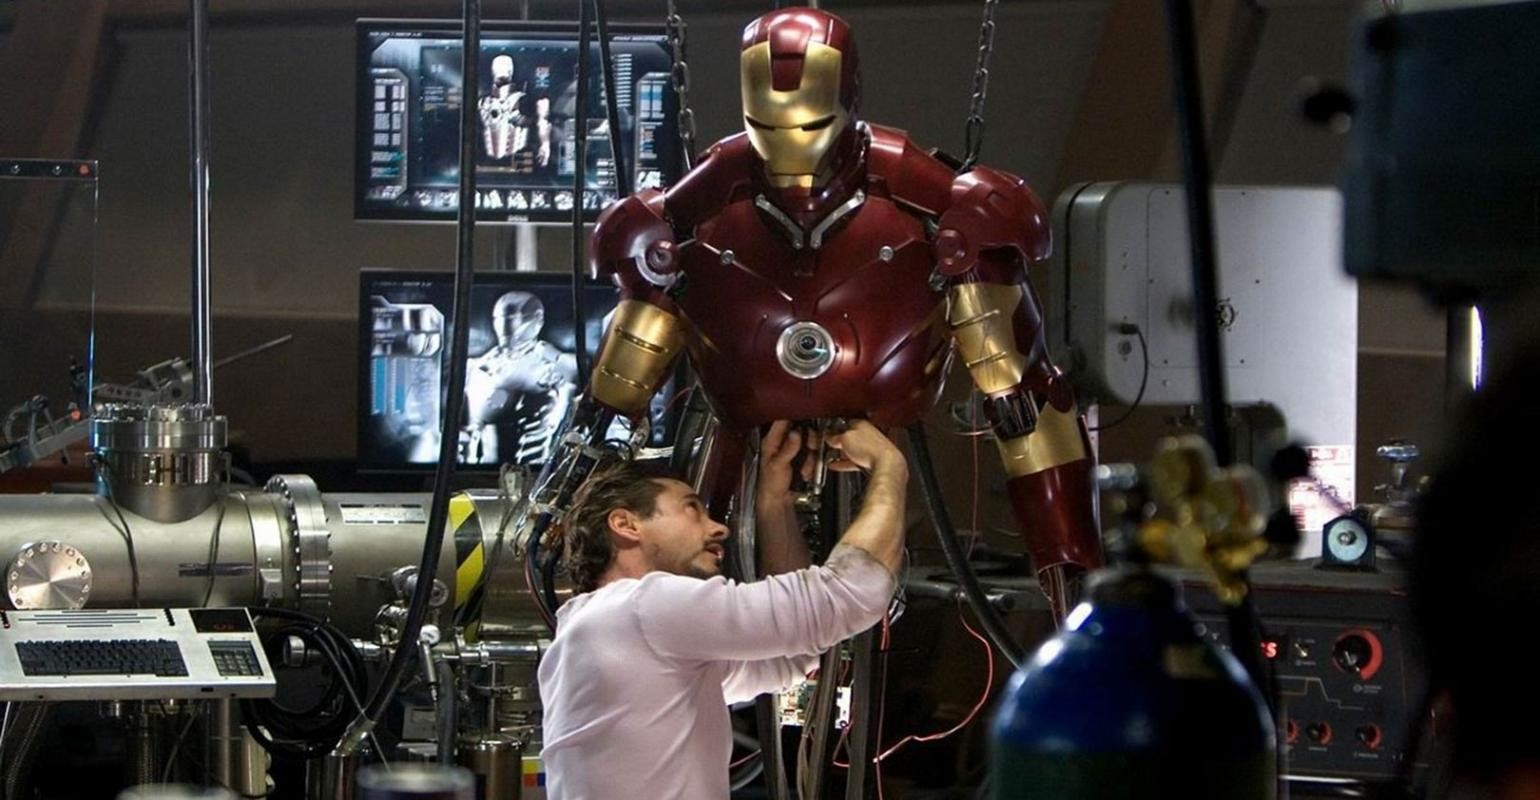 Iron Man establishes Marvel legacy